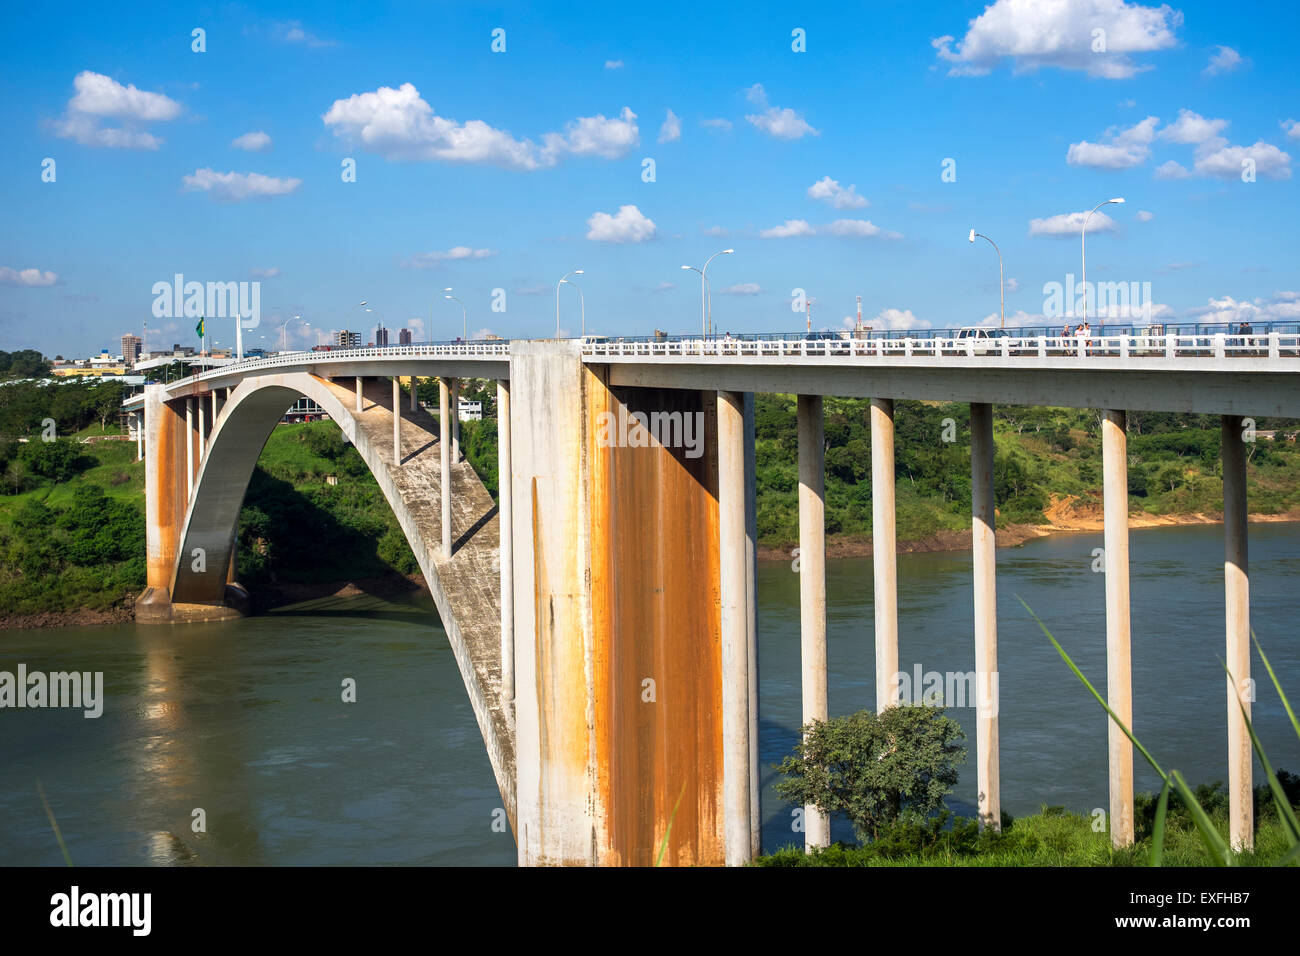 Blick auf die Freundschaft-Brücke (Ponte da Amizade) verbindet Foz do Iguaçu, Brasilien, nach Ciudad del Este in Paraguay. Stockfoto